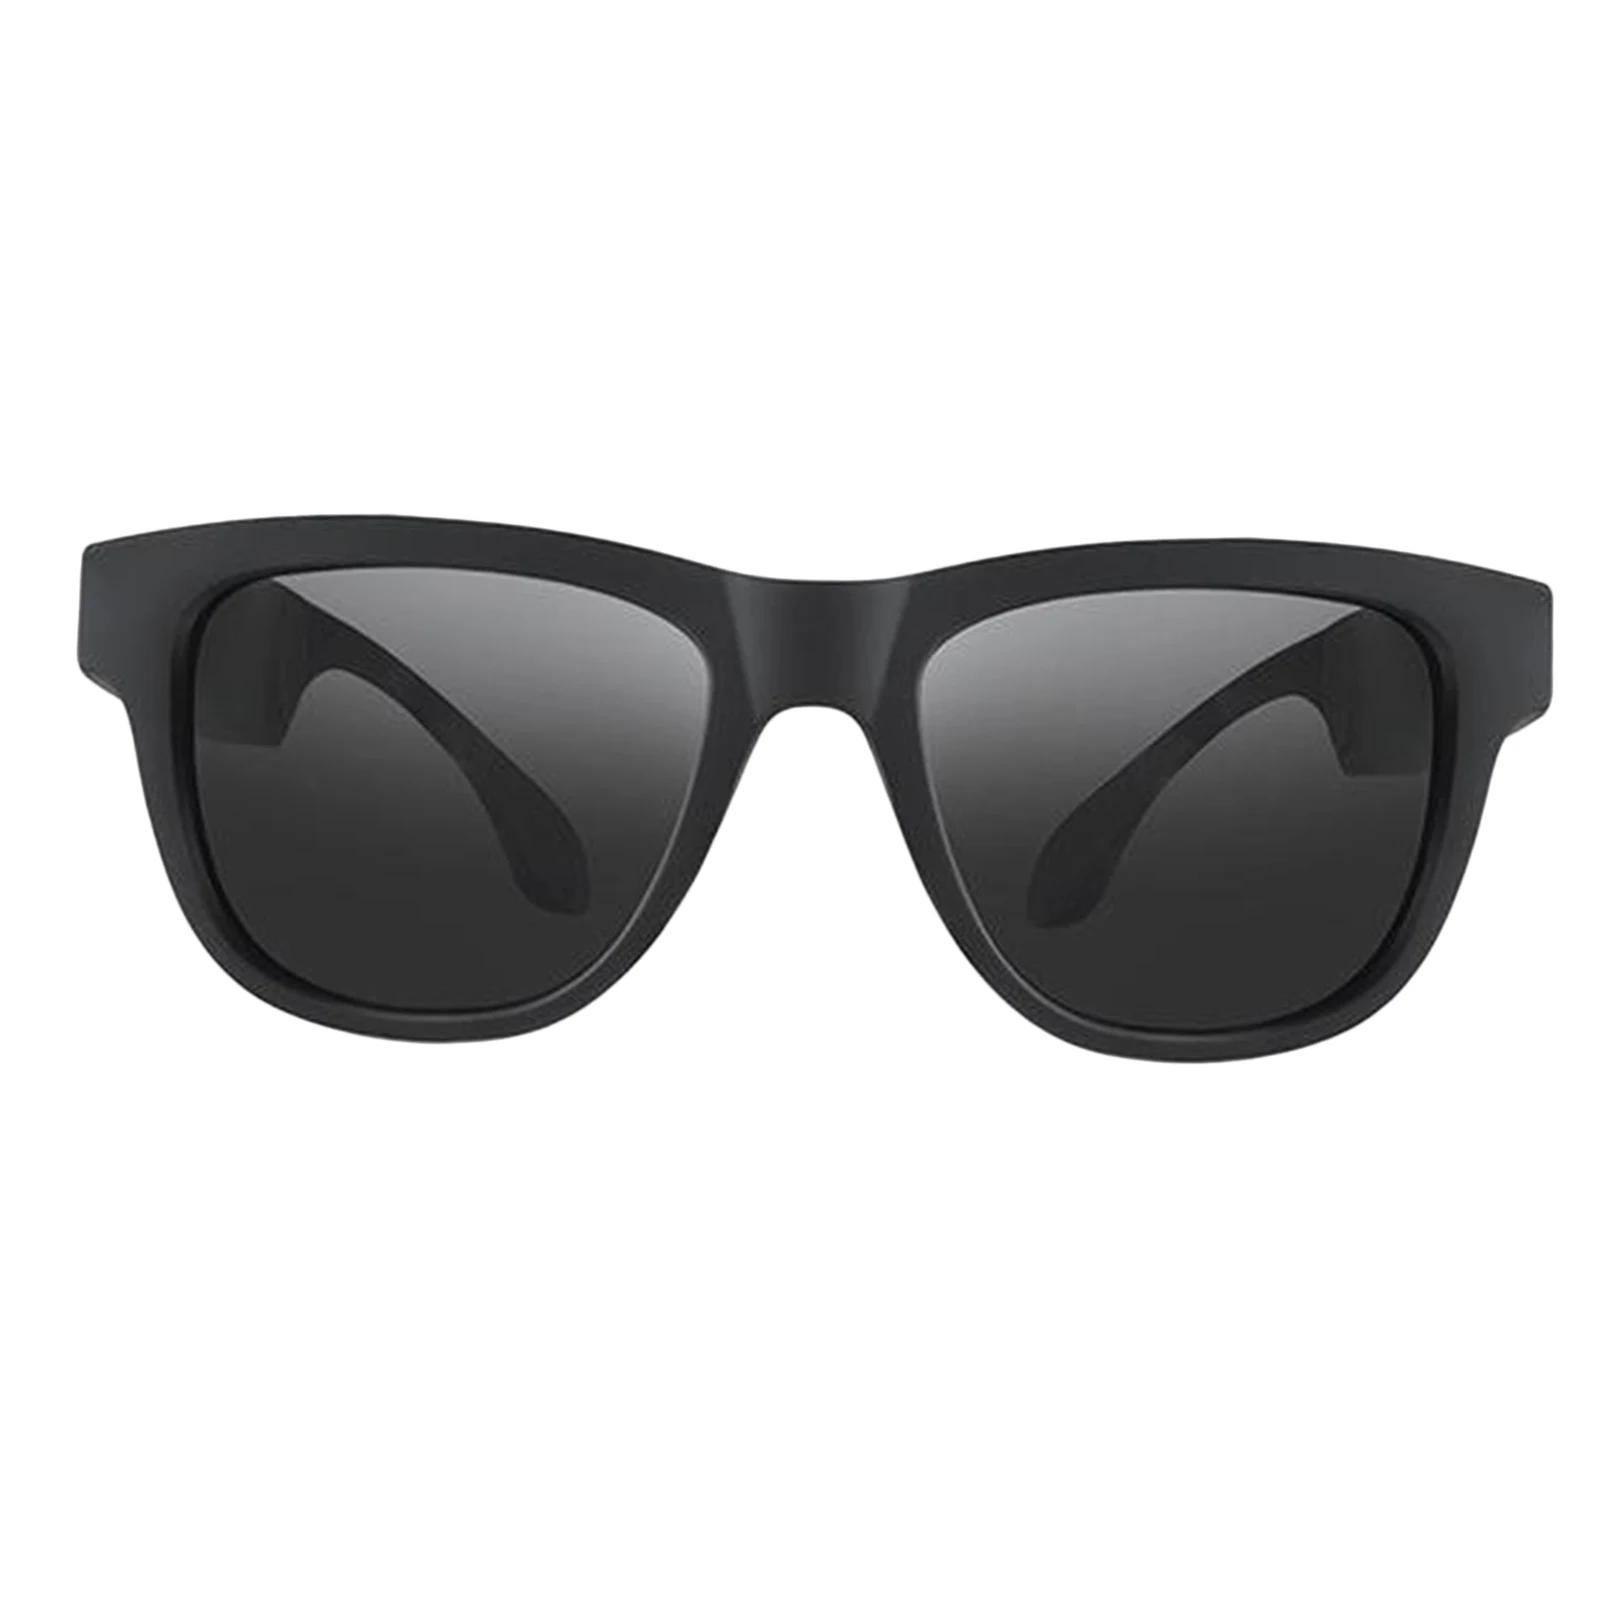 구매 G1 블루투스 스마트 선글라스 뼈 전도 헤드폰 오픈 이어 스피커 안경